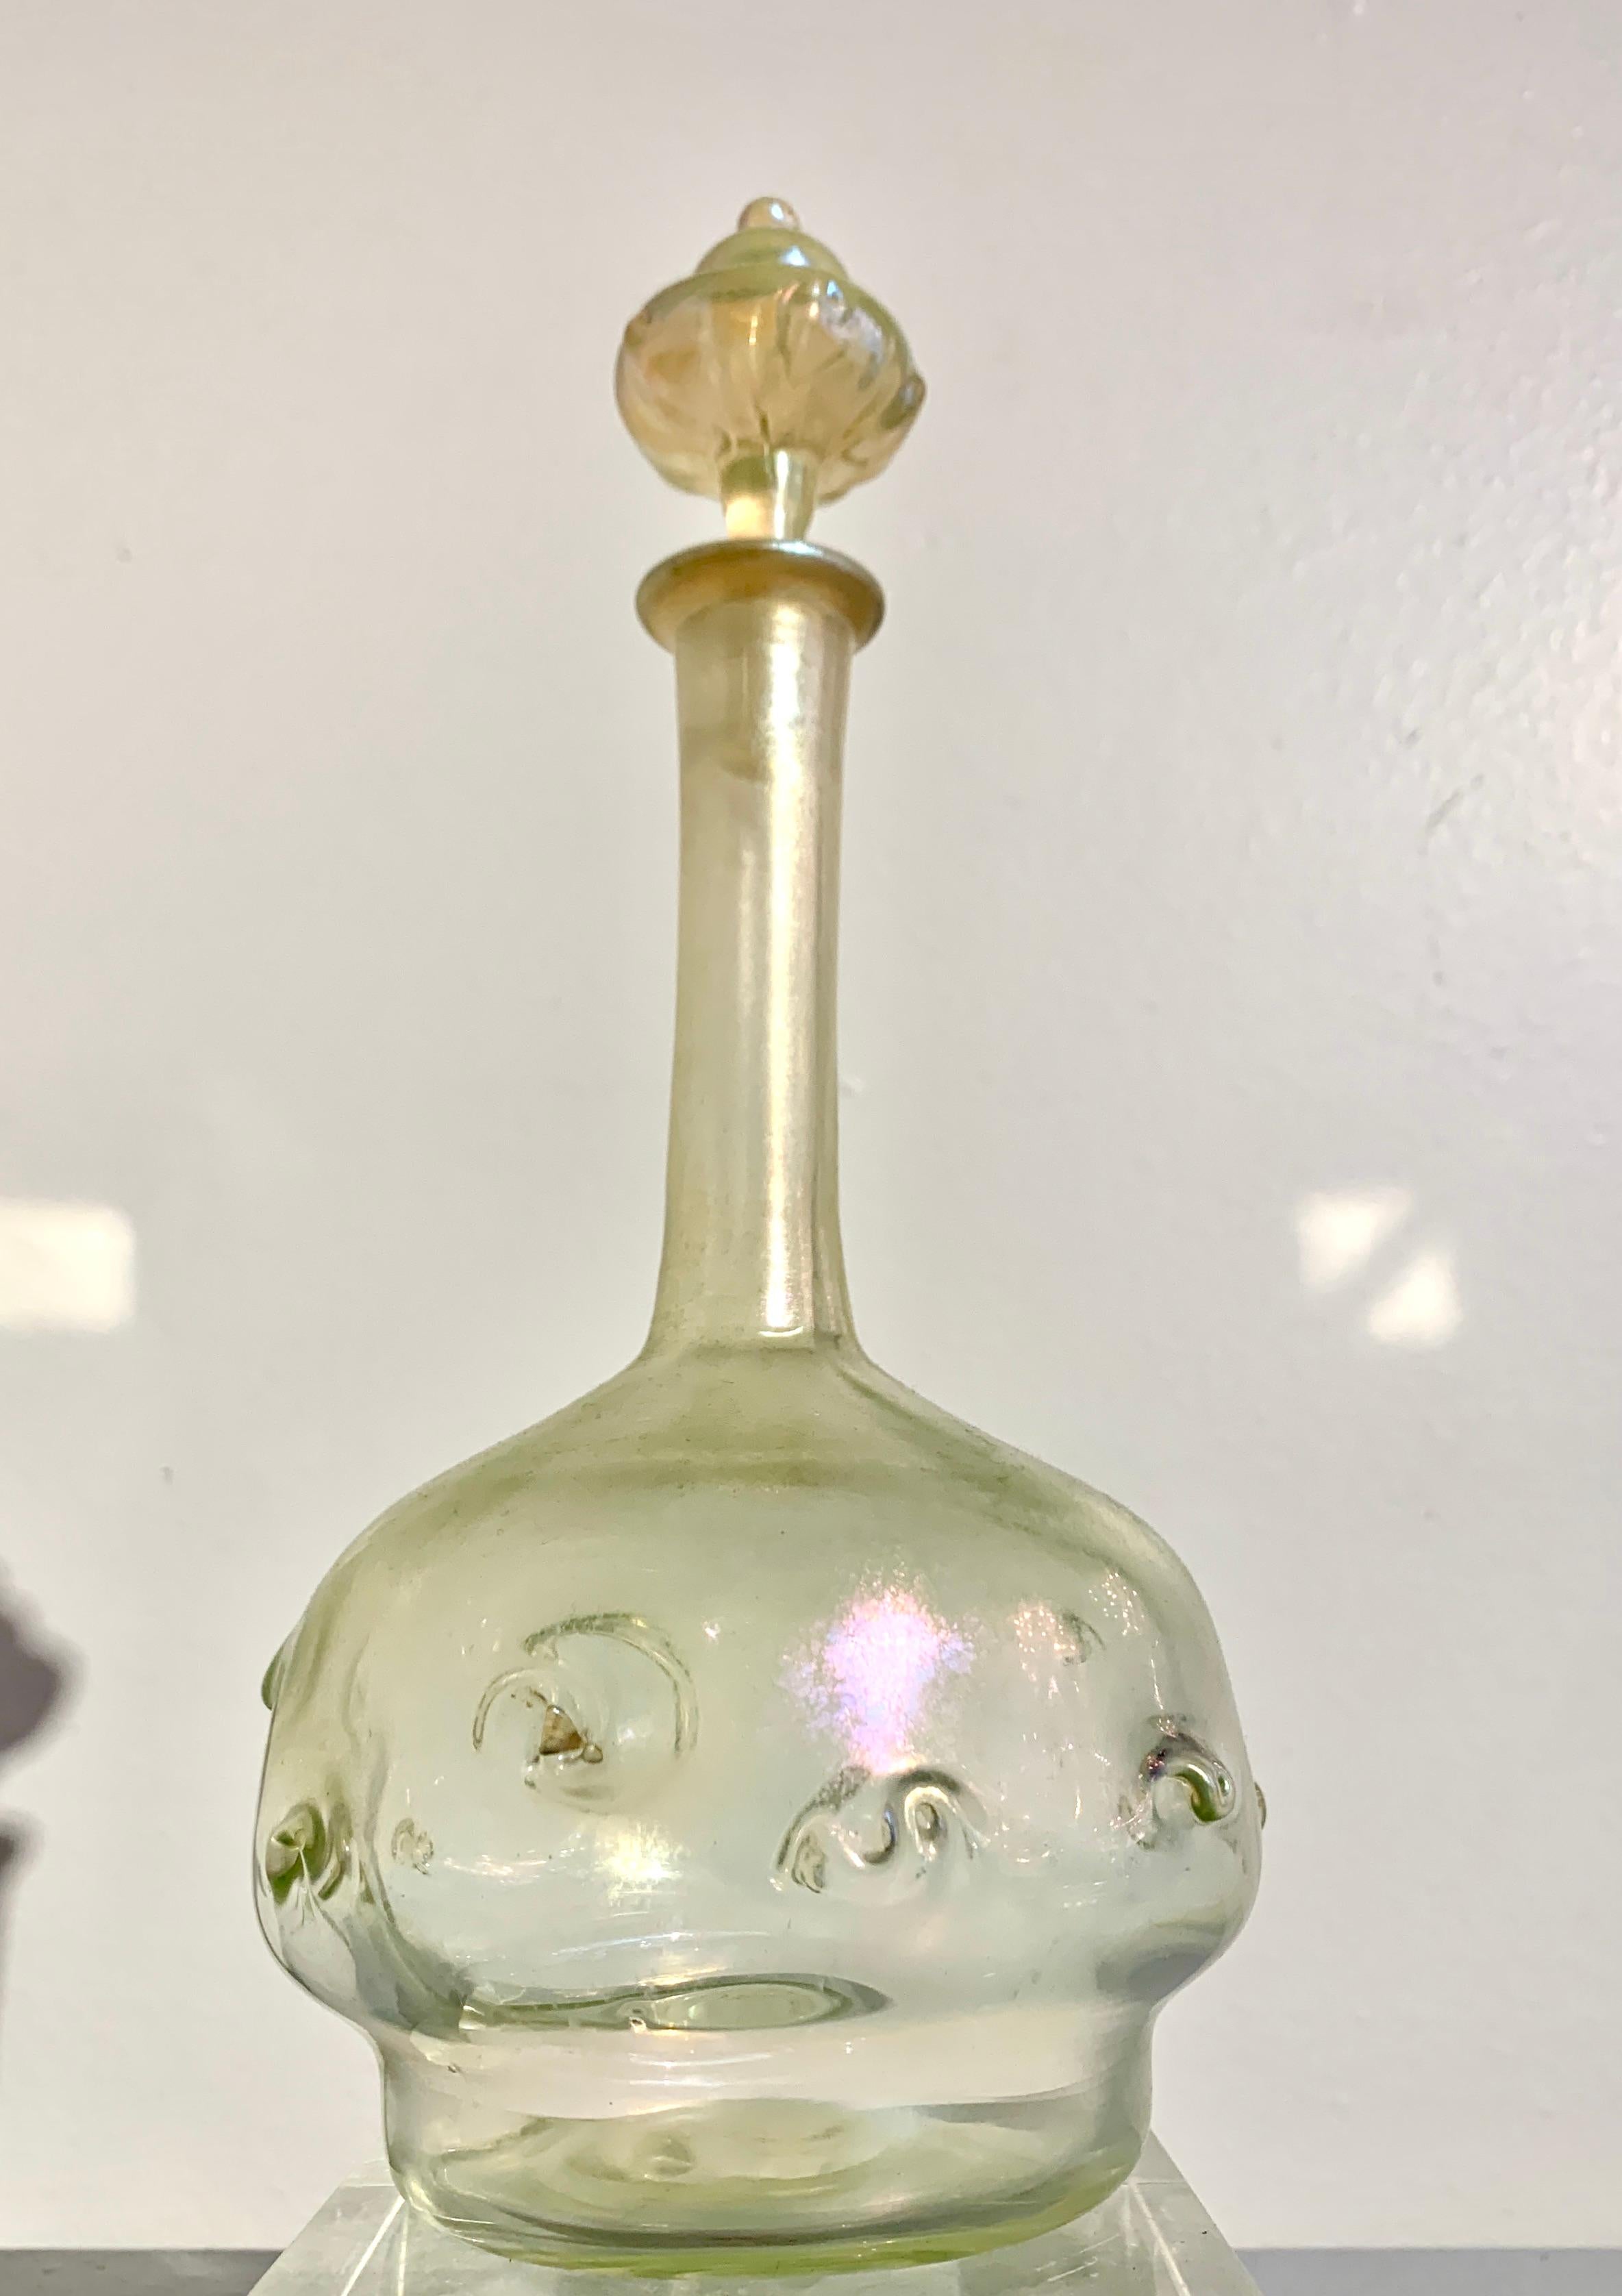 Eine wunderbare Tiffany Studios Favrile Glas Dekanter und Stopfen mit Zopf-Design, Jugendstil-Periode, frühen 20. 

Das transparente Glas hat einen wunderbaren, subtilen Schimmer, der schön mit den Veränderungen des Lichts spielt. Der hohe Dekanter